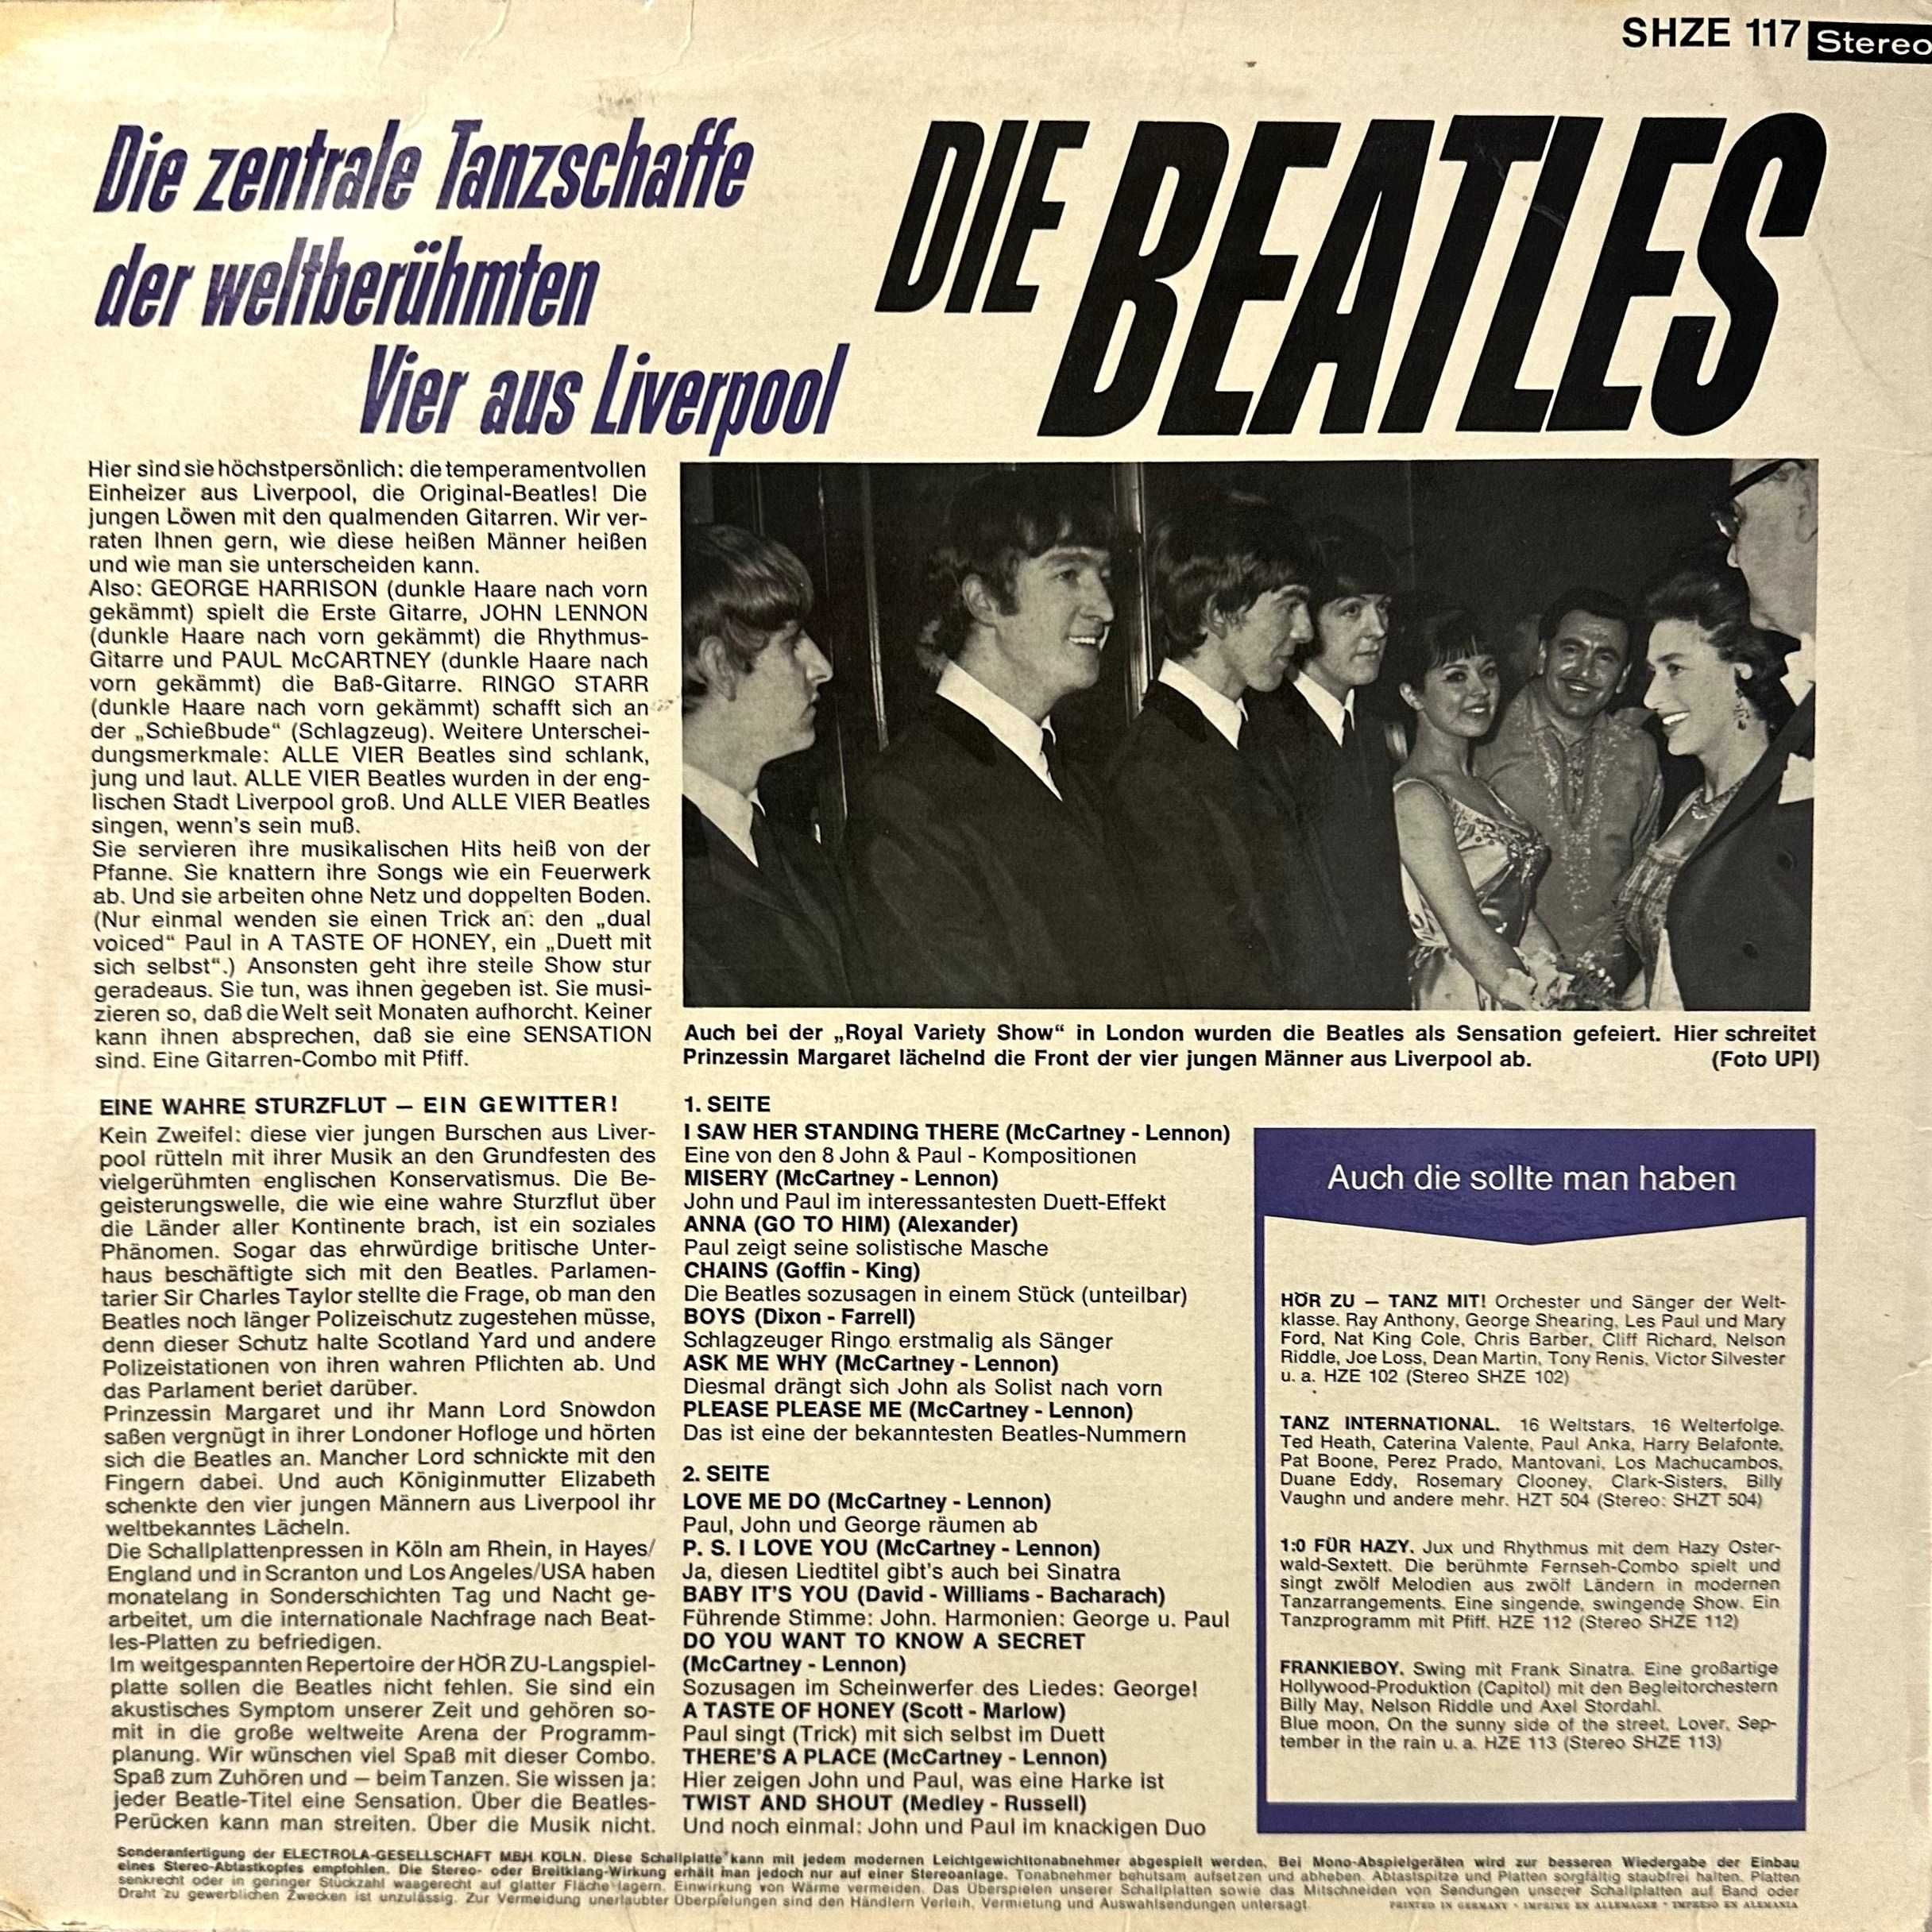 Die Beatles - Please Please Me (Vinyl, 1969, Germany)